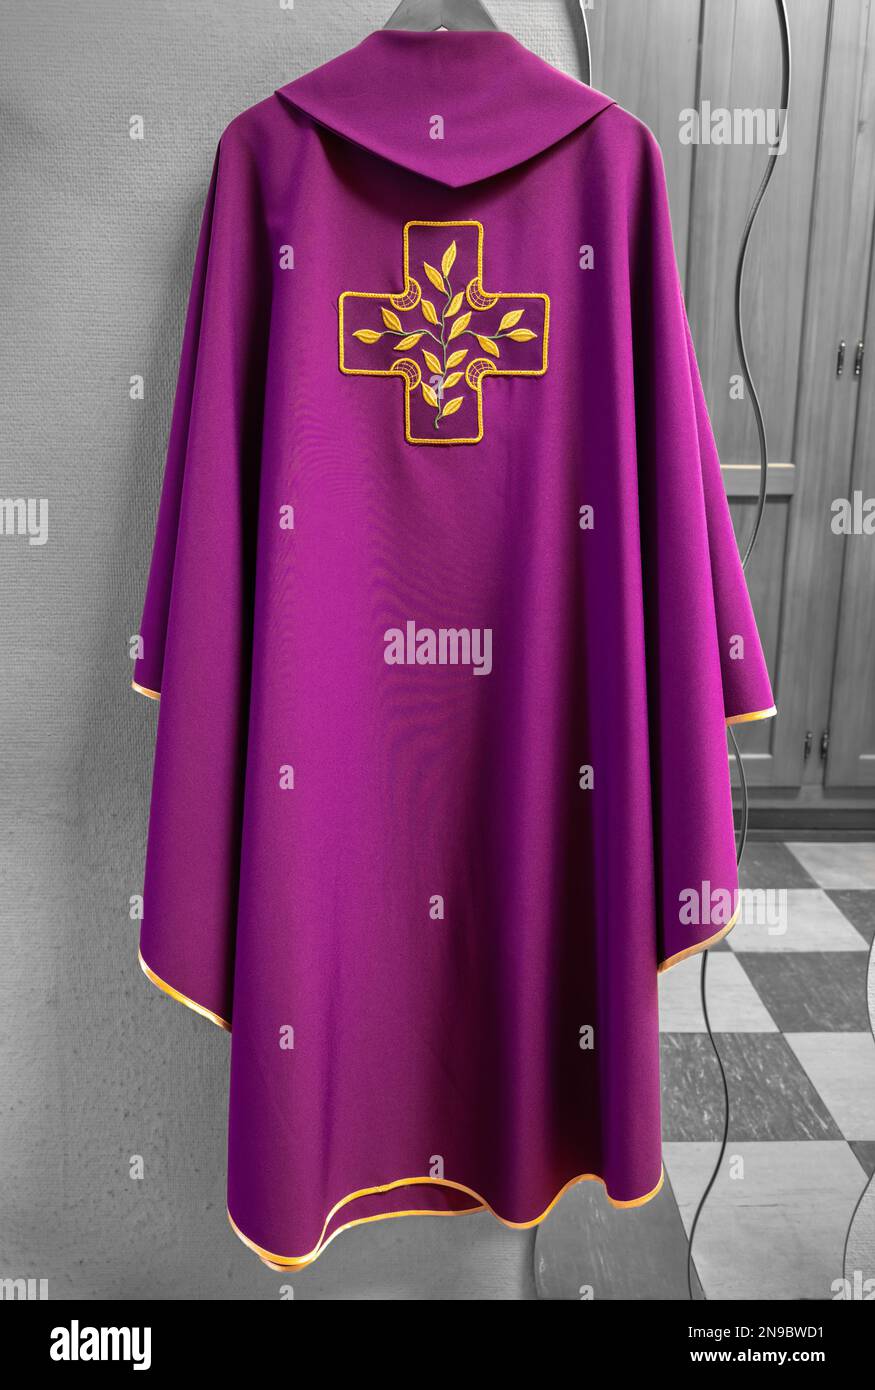 Chasuble priest immagini e fotografie stock ad alta risoluzione - Alamy